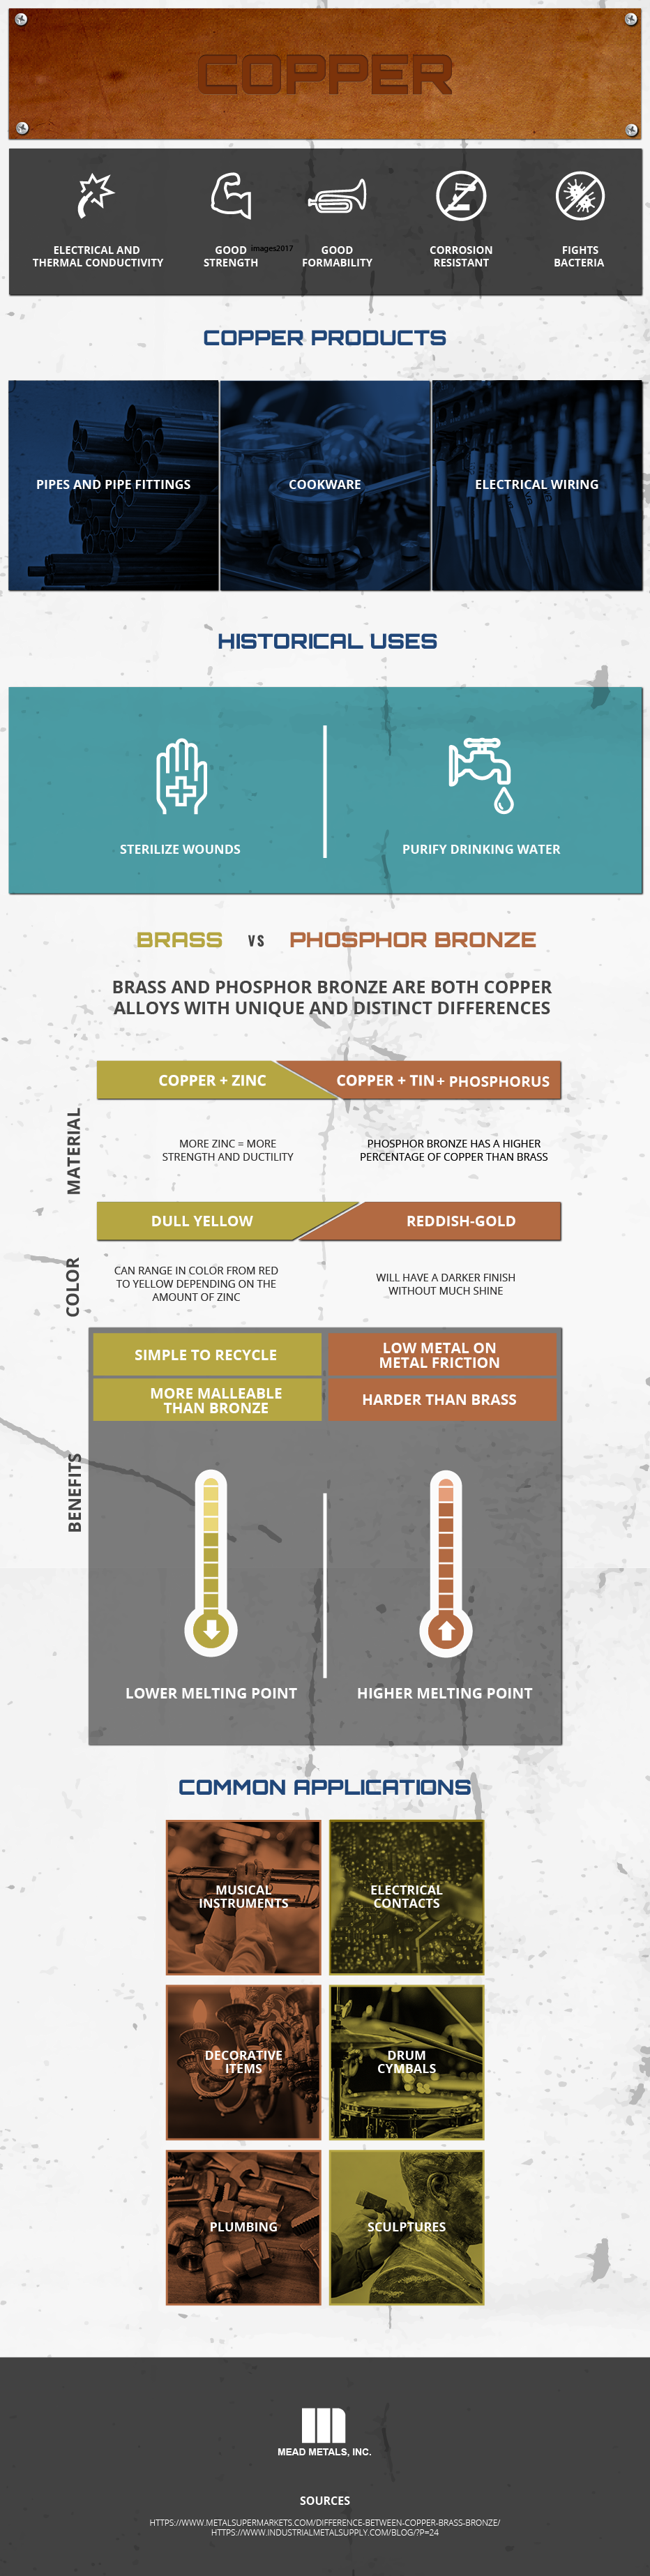 Bronze VS Copper VS Brass: What Are The Differences